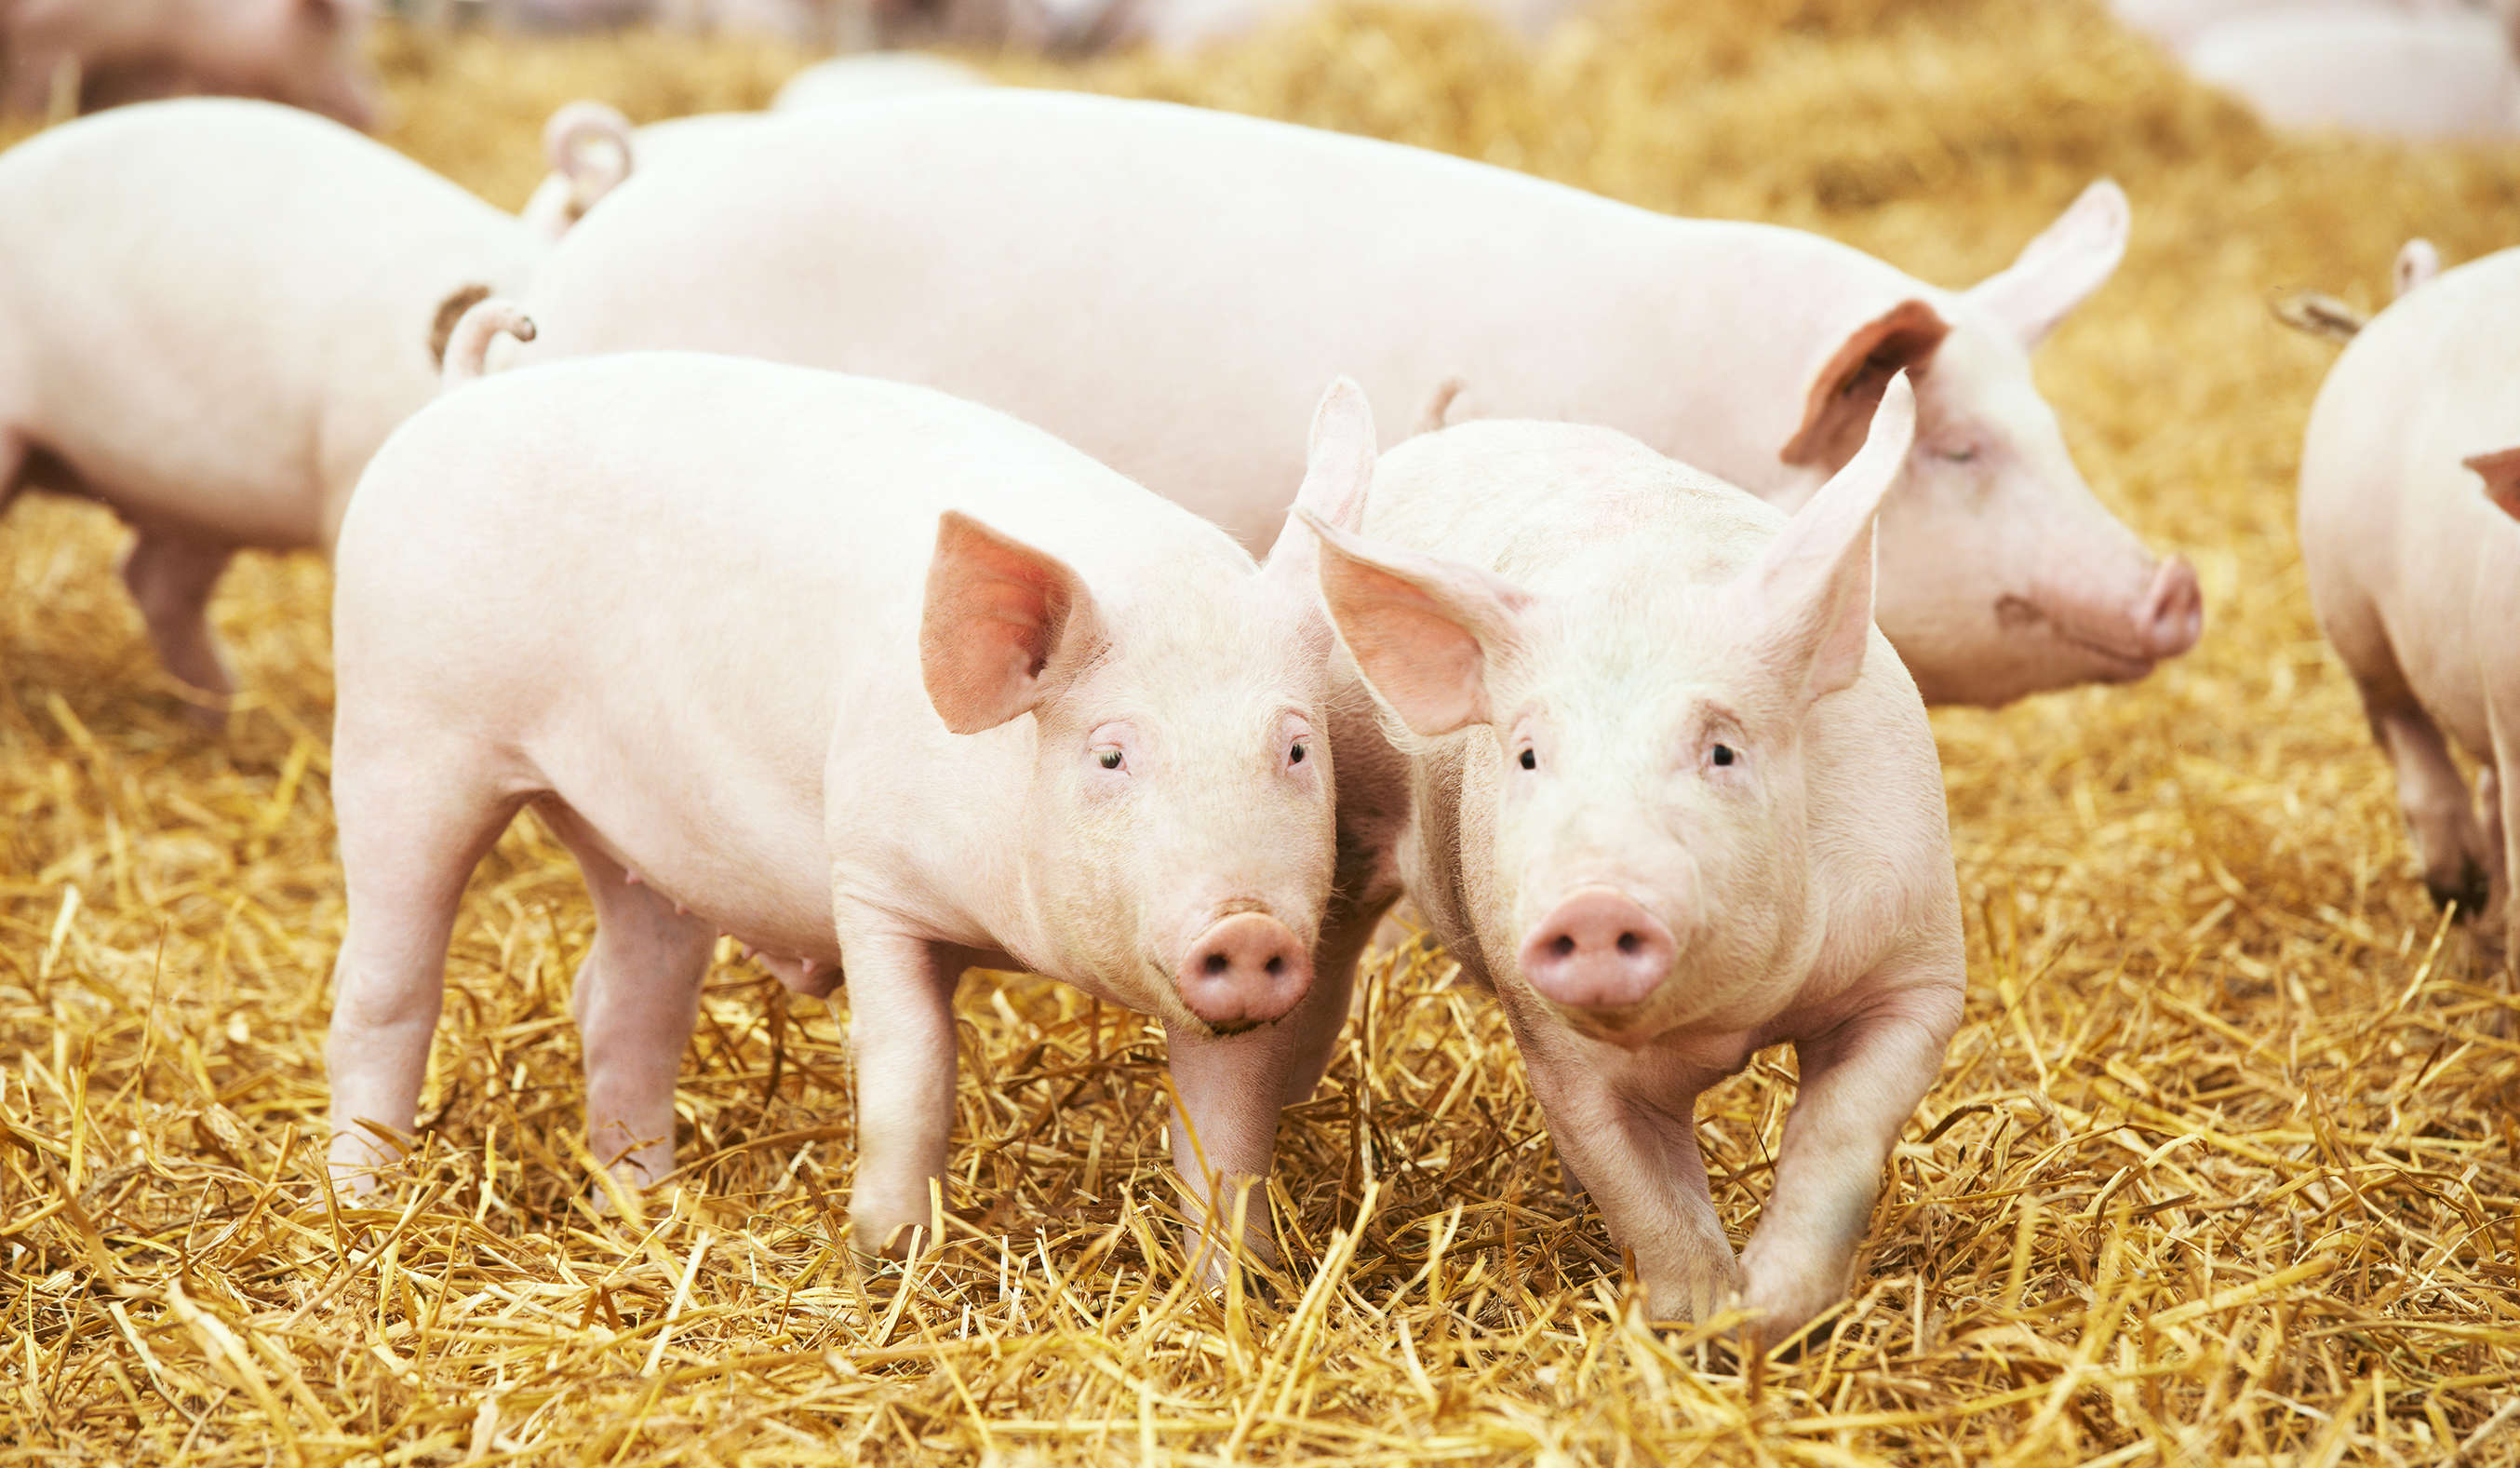 λουκάνικα-from-straw-pigs.jpg